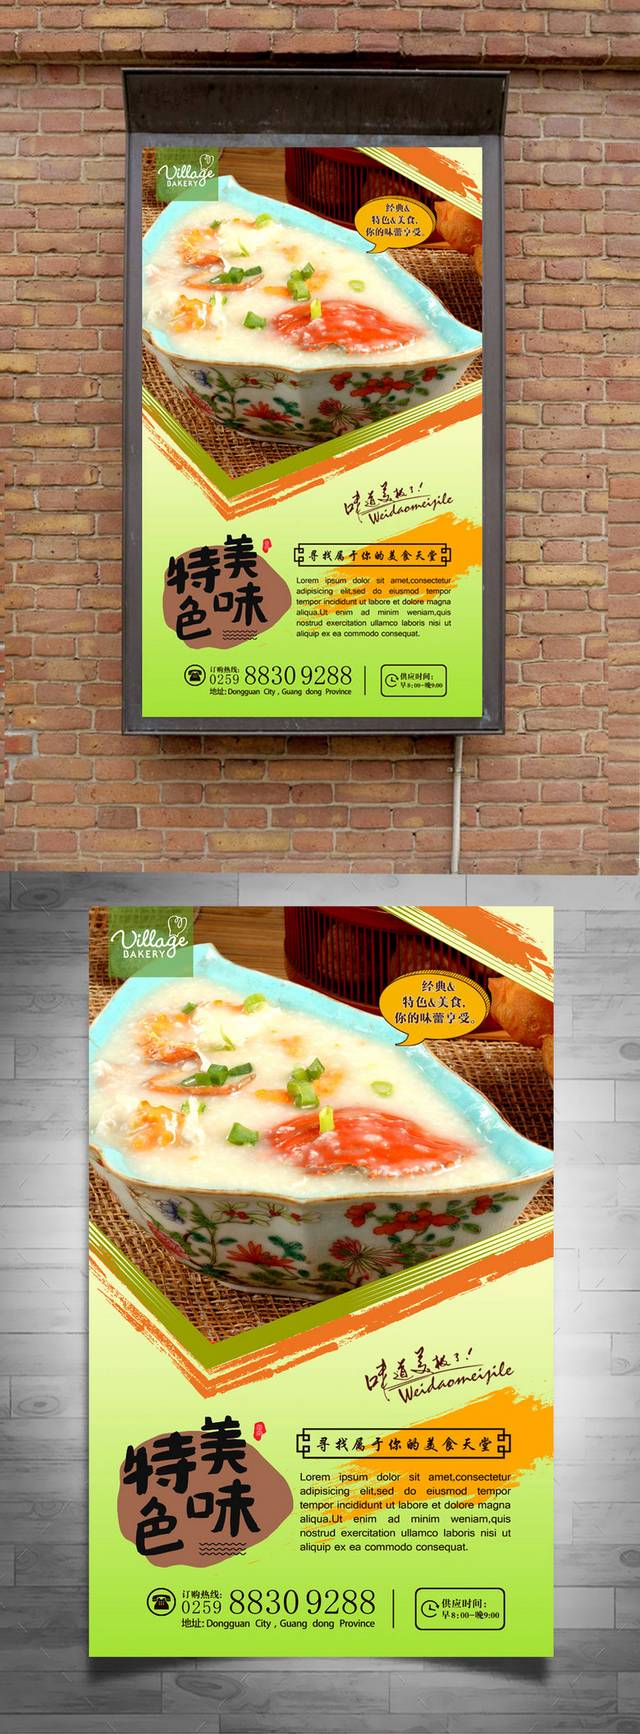 清新粥宣传海报设计psd模板